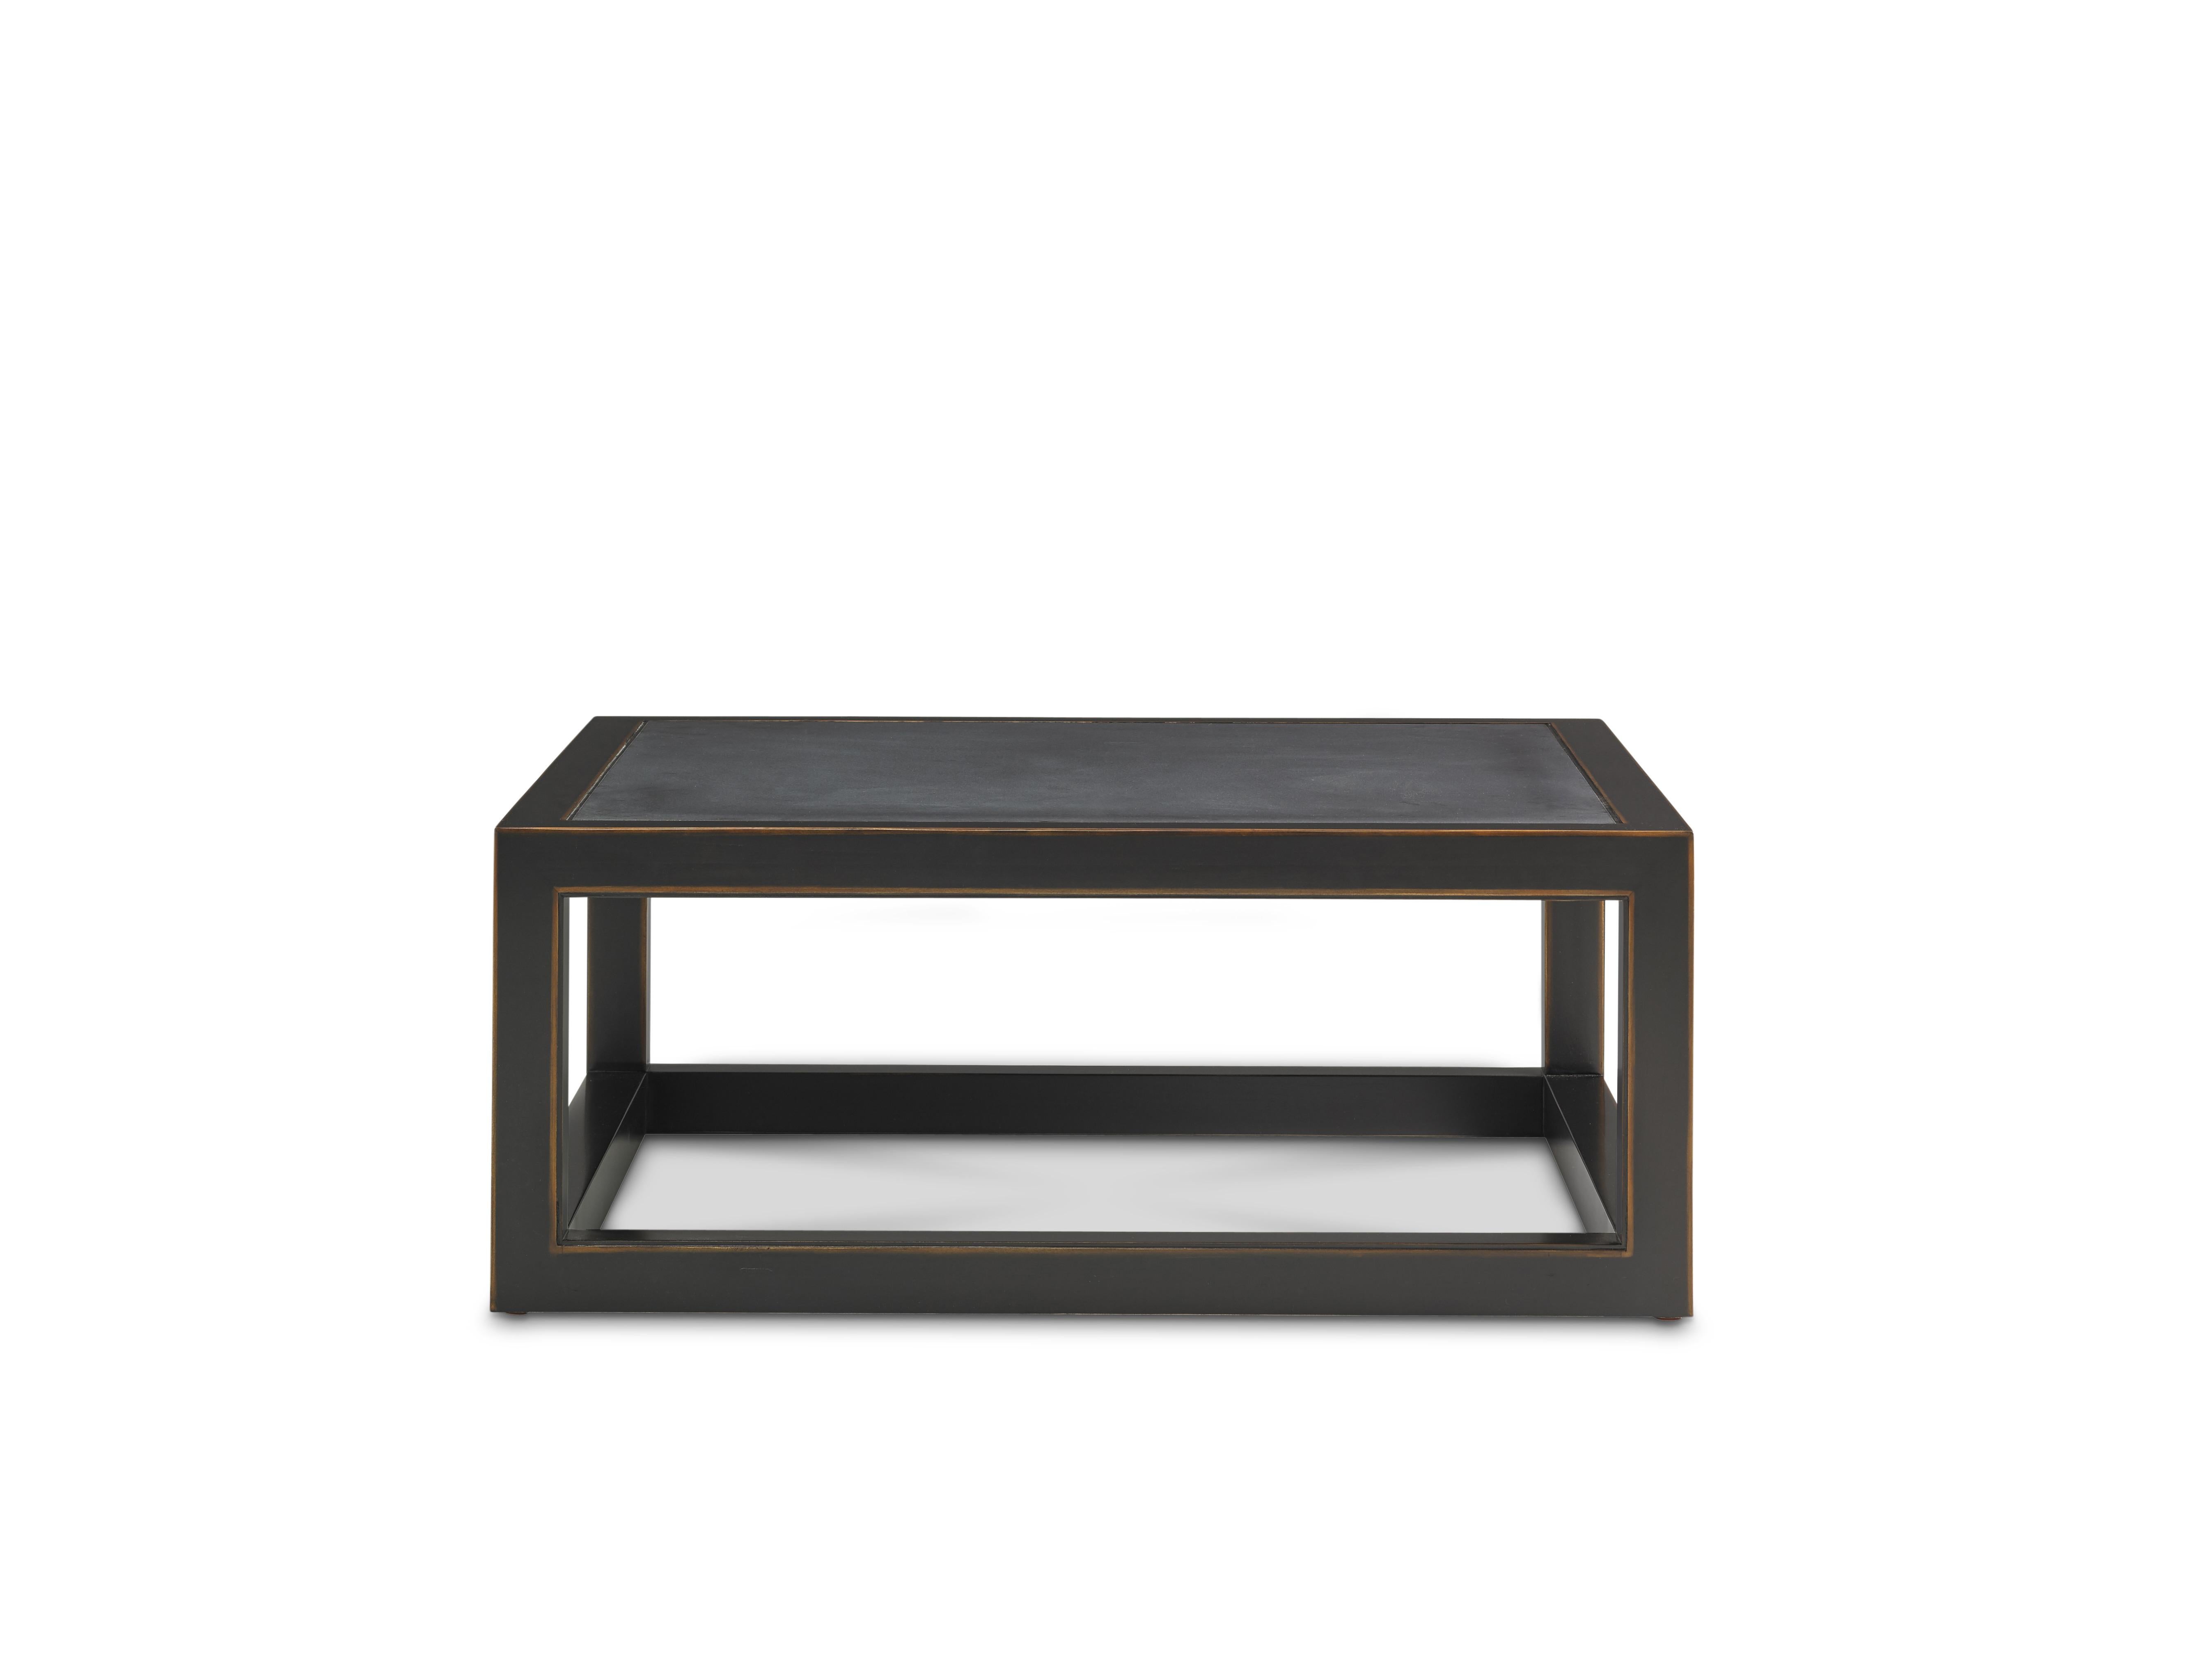 Unser Ming-Tisch ist dem uralten traditionellen chinesischen Stil treu, zeigt aber mit seinen klaren Linien, der Oberfläche aus geriebenem Ebenholz und der Platte aus schwarzem Granit eine moderne Sensibilität. Er ist ein wunderbarer Blickfang für